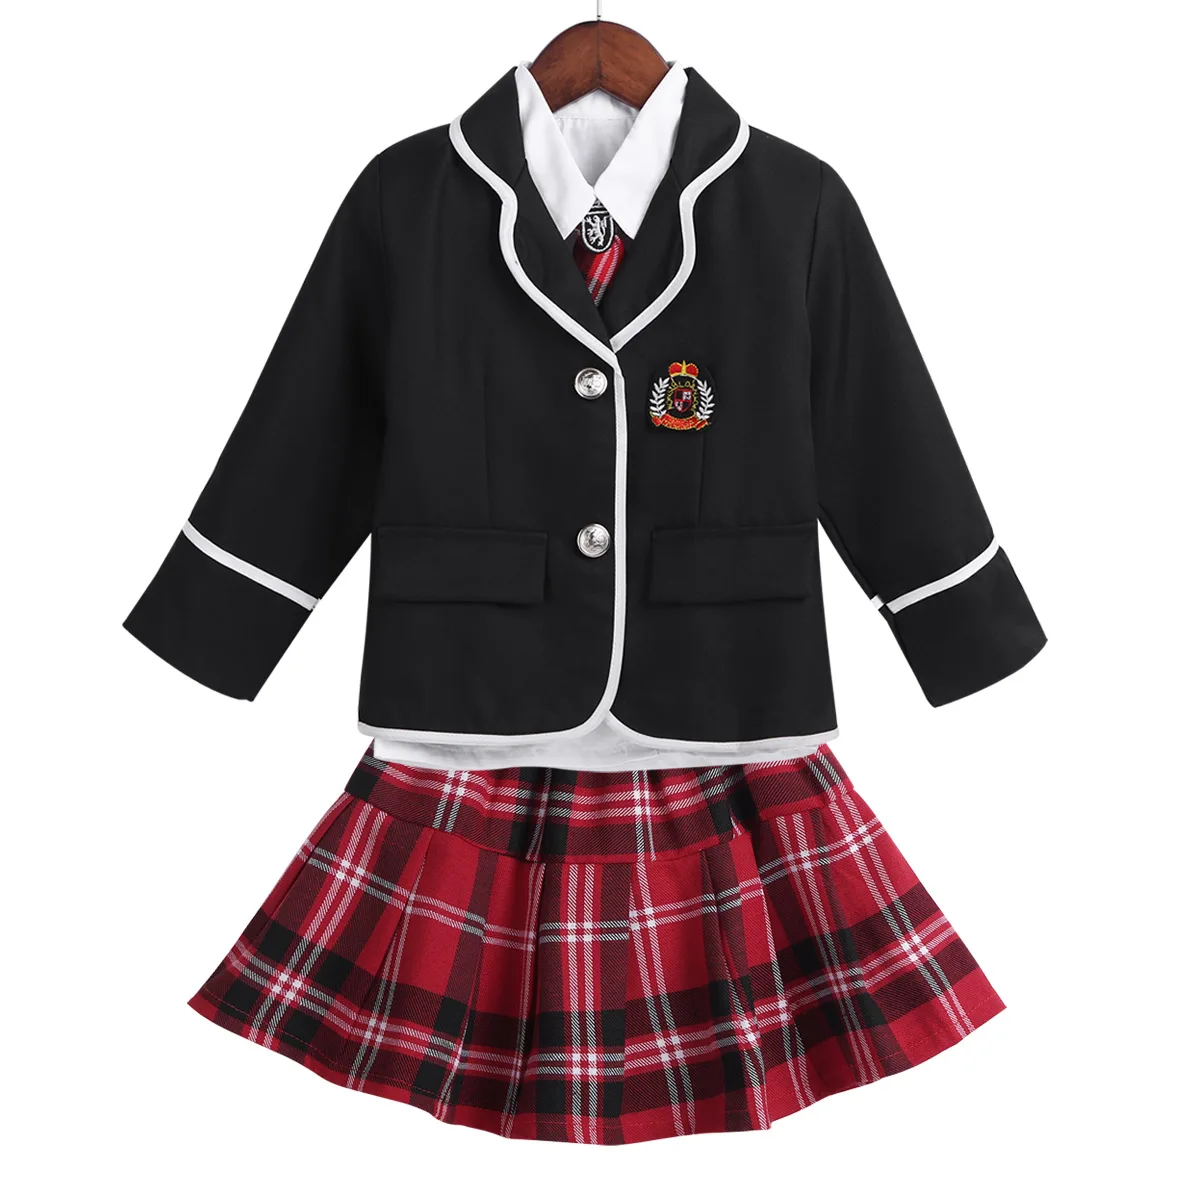 Детский комплект японской школьной формы, костюм для девочек и мальчиков, куртка, рубашка, брюки/юбка, галстук, одежда, От 4 до 12 лет, школьная одежда - Цвет: Black